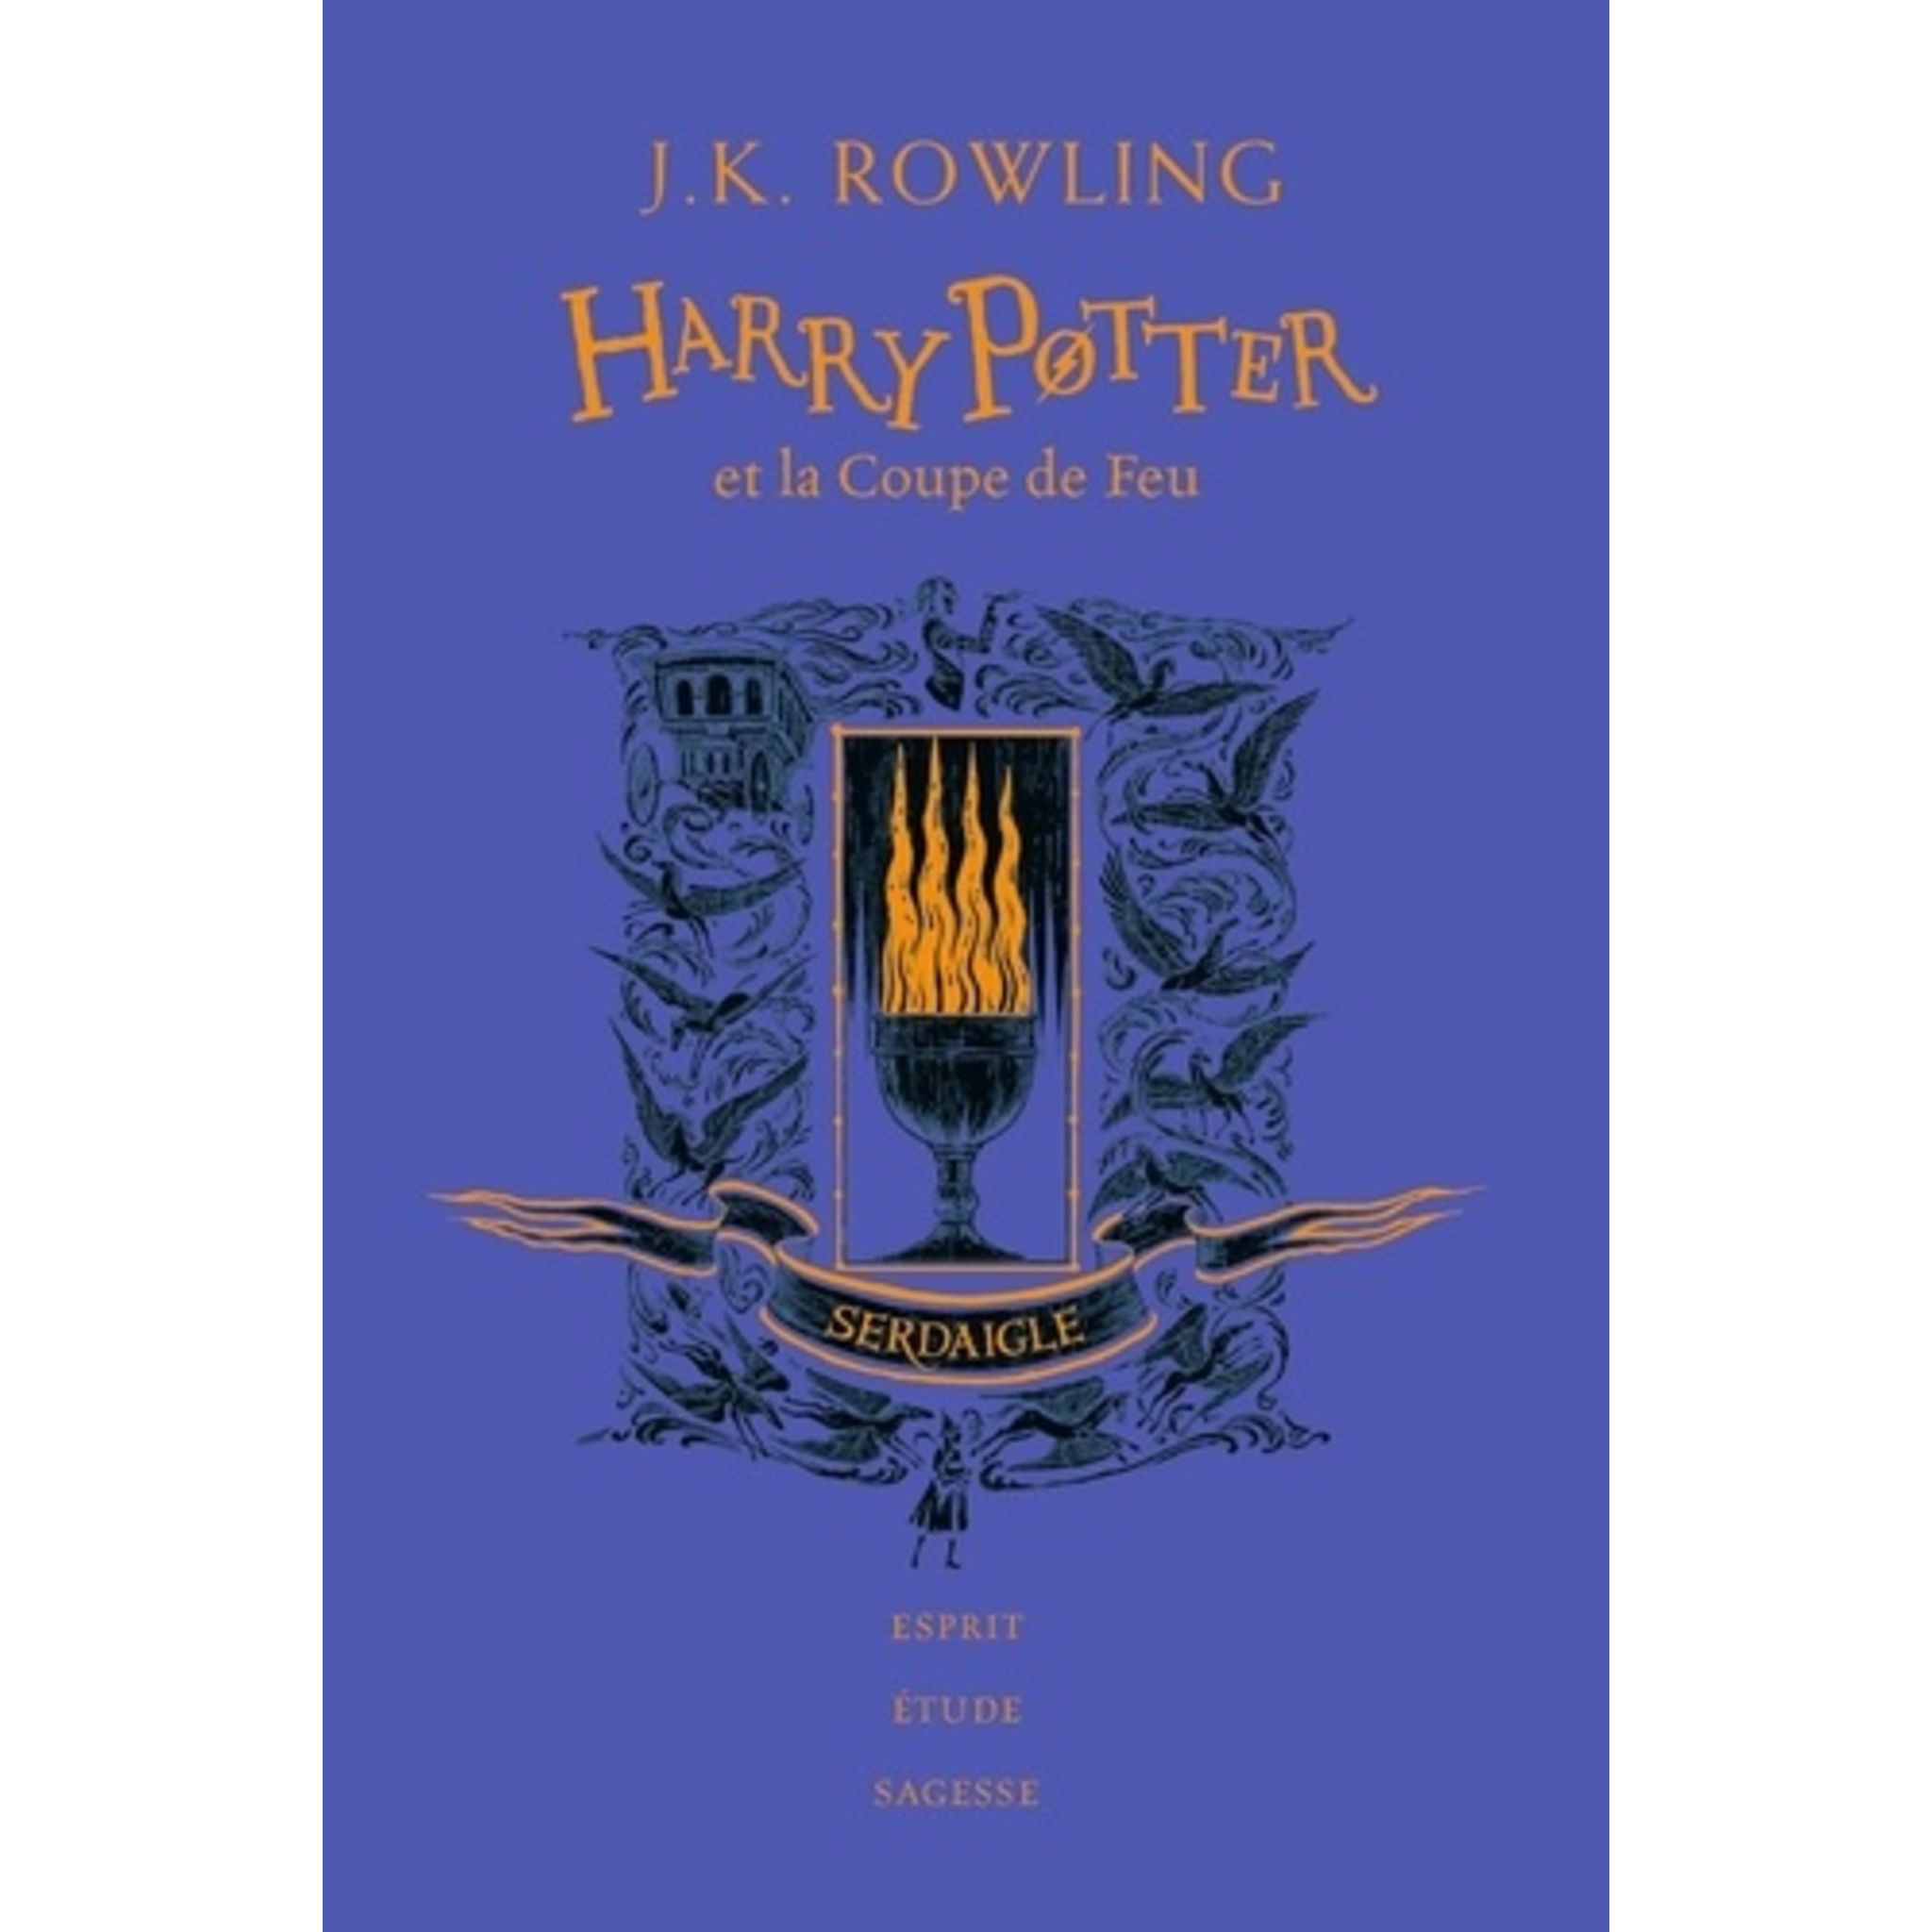 Harry Potter - The Complete Collection de J.K. Rowling - Livre - Decitre